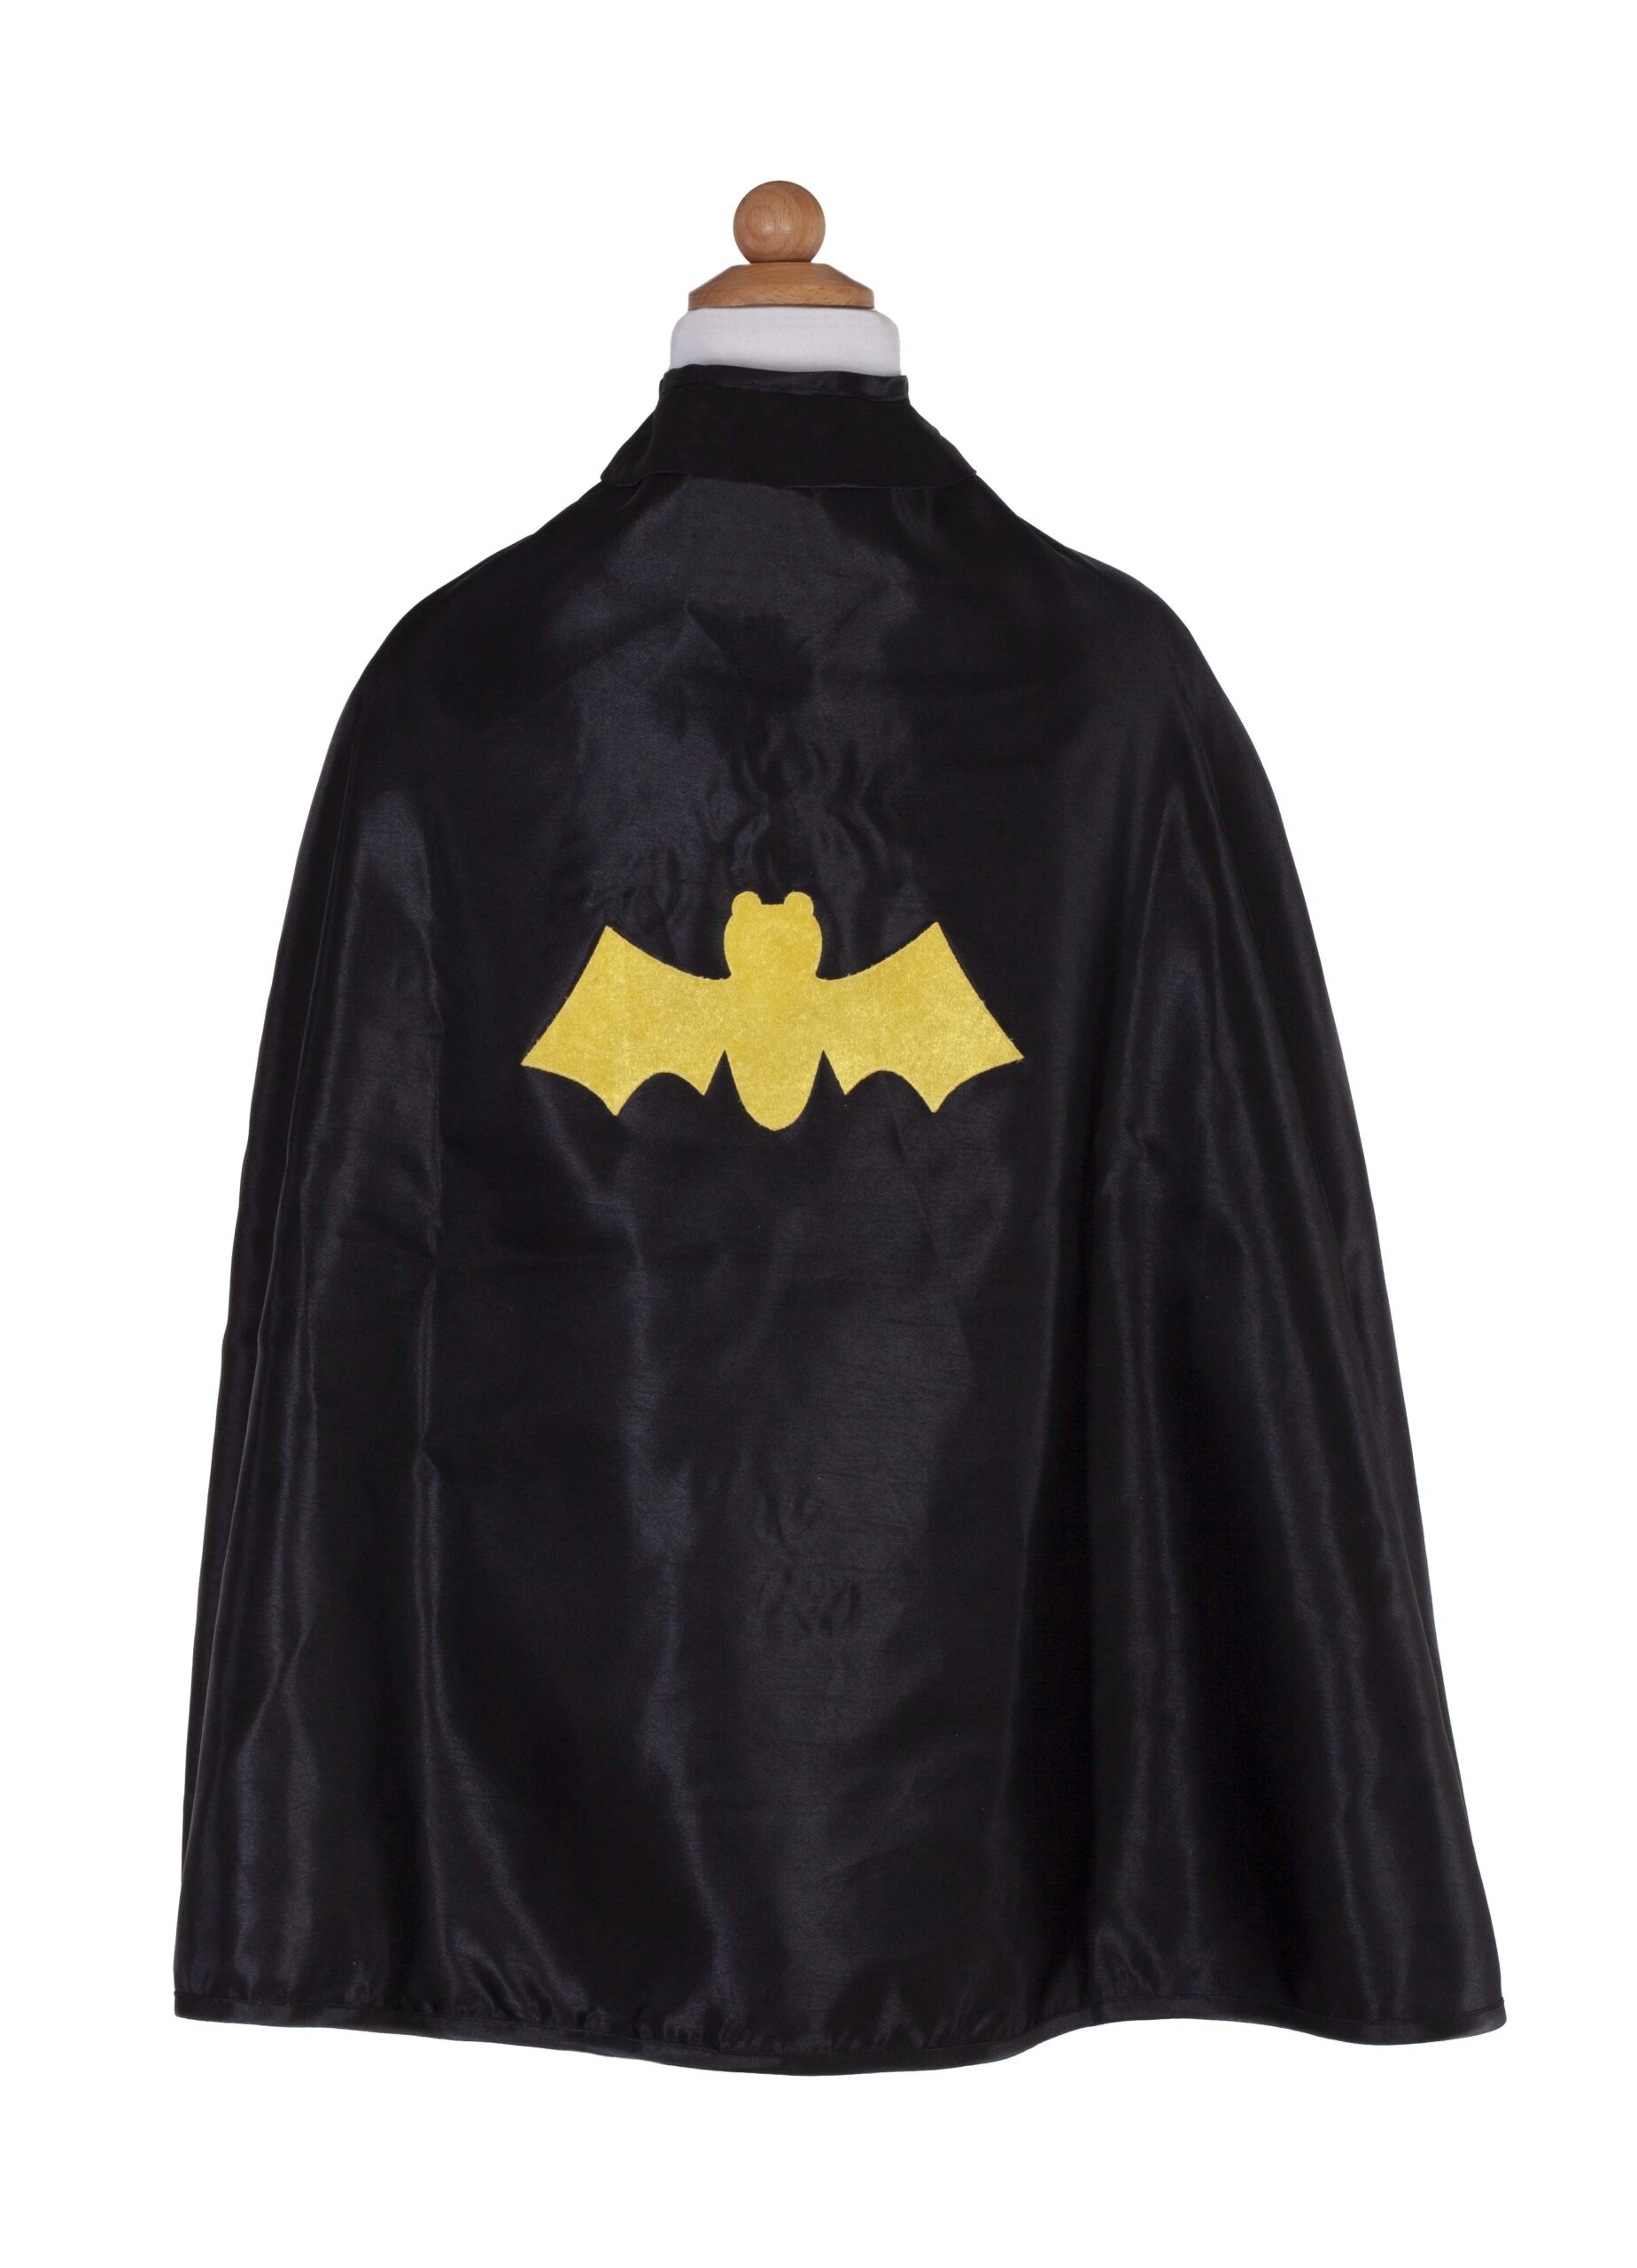 55270 55273 Spider bat cape bat back on mannequin